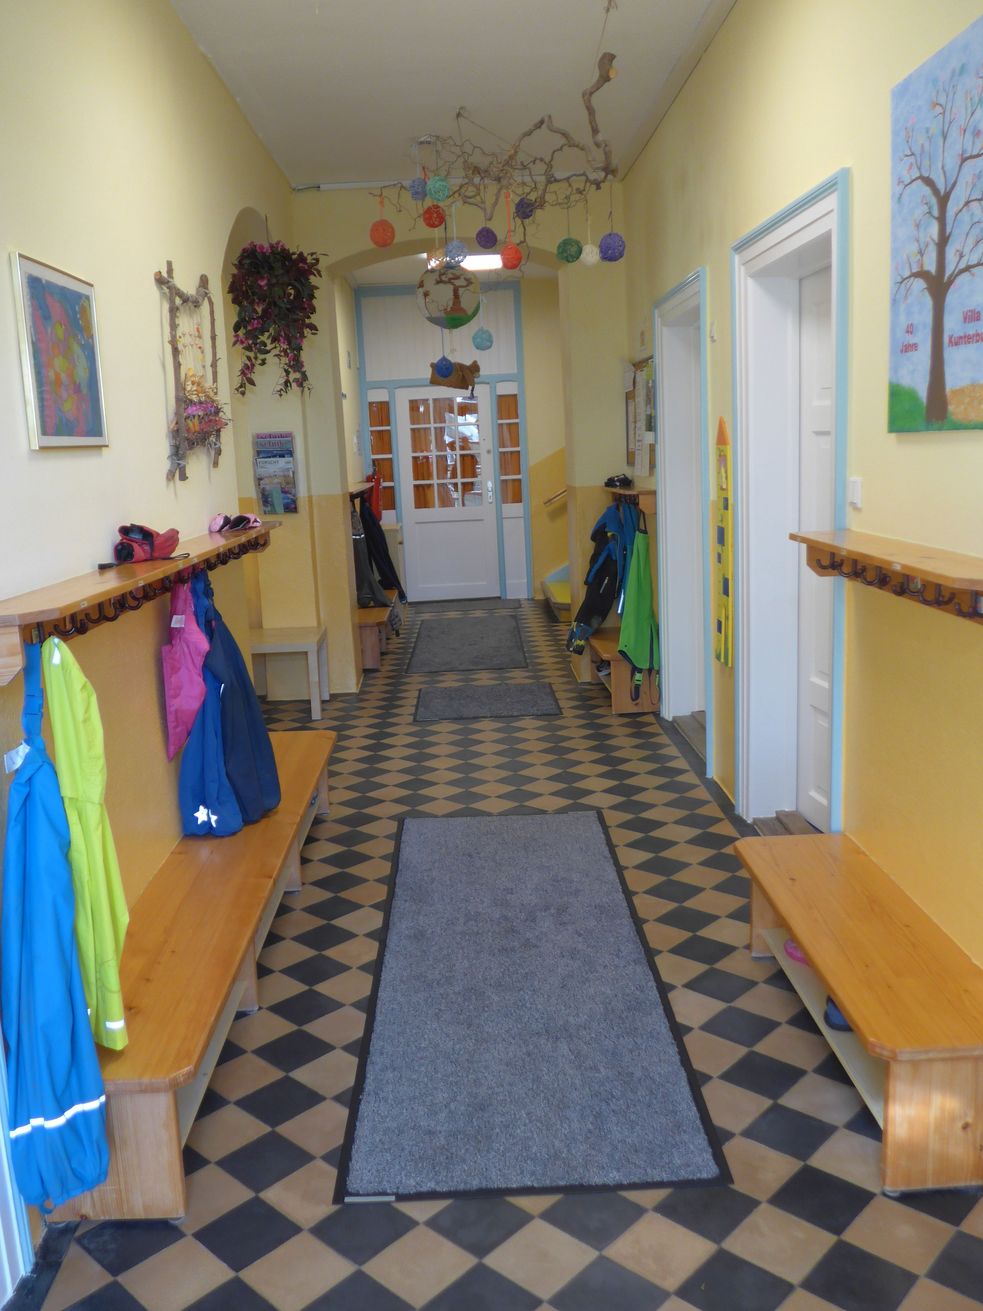 Eingangsbereich mit Bildern und Deko an den Wänden, seitlich eine Kinder-Garderobe mit Jacken